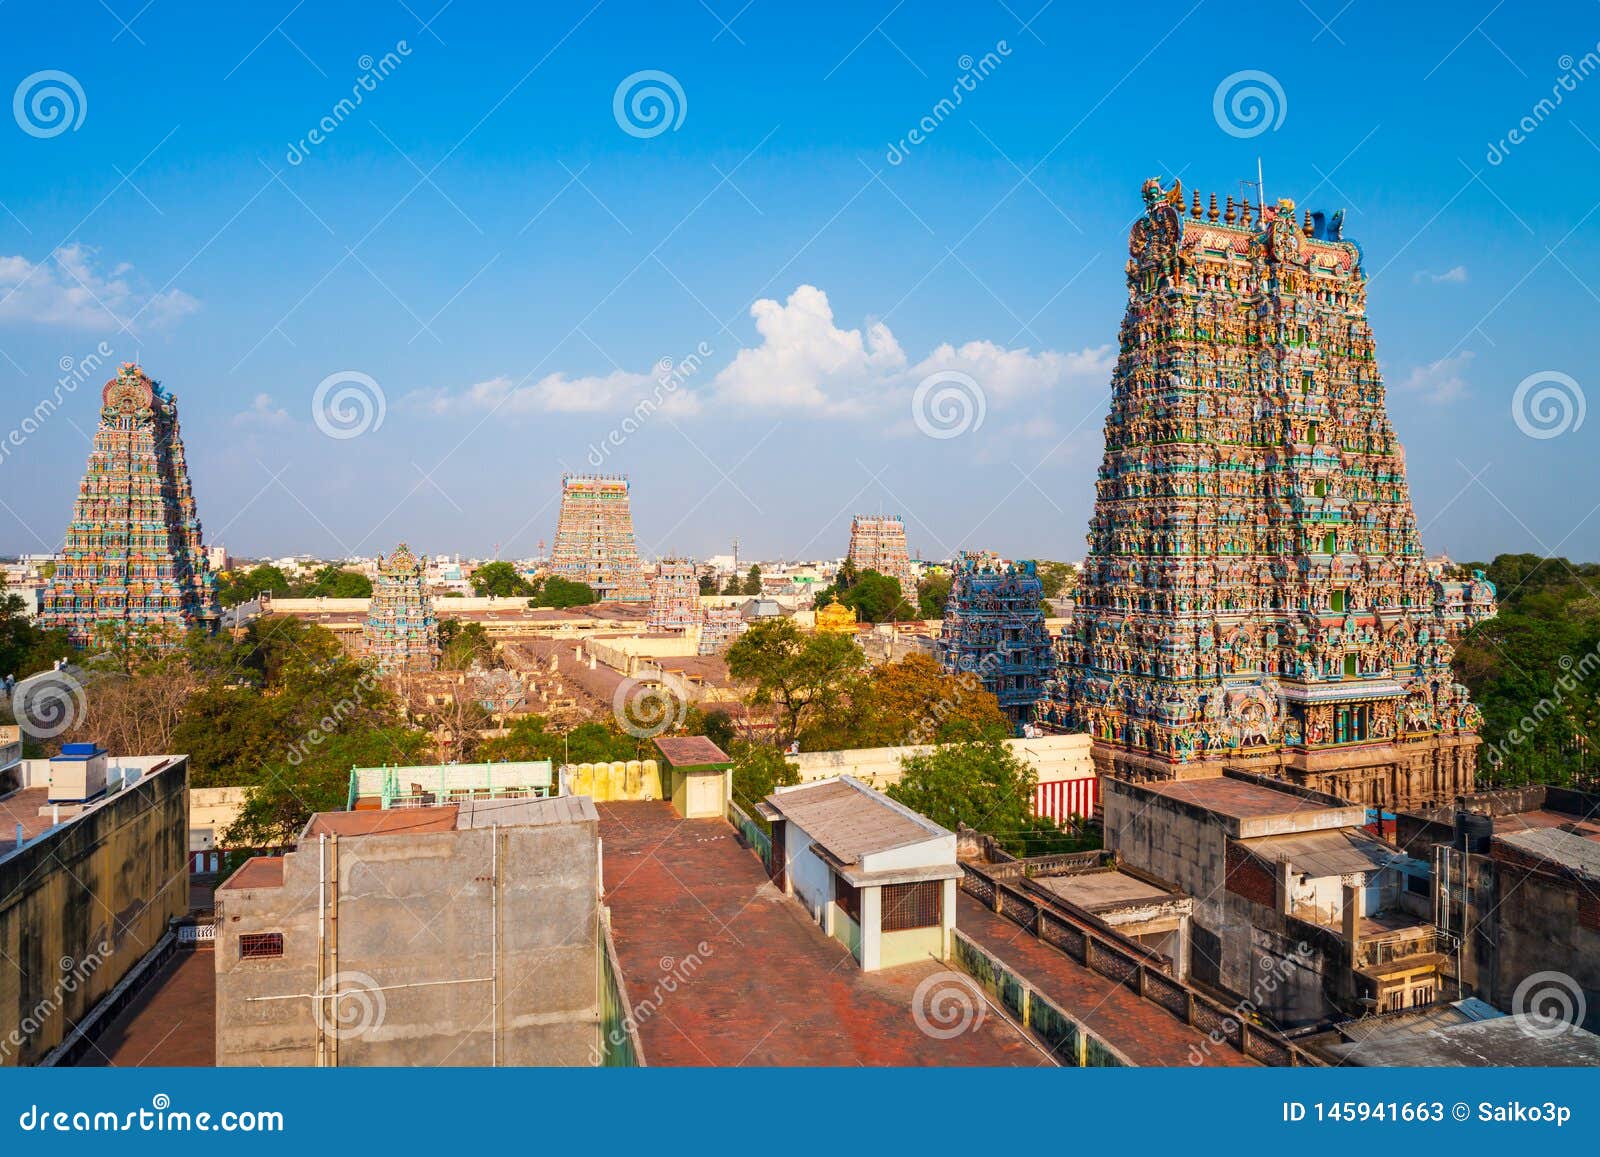 Meenakshi Amman Temple in Madurai Stock Image - Image of pantheon ...